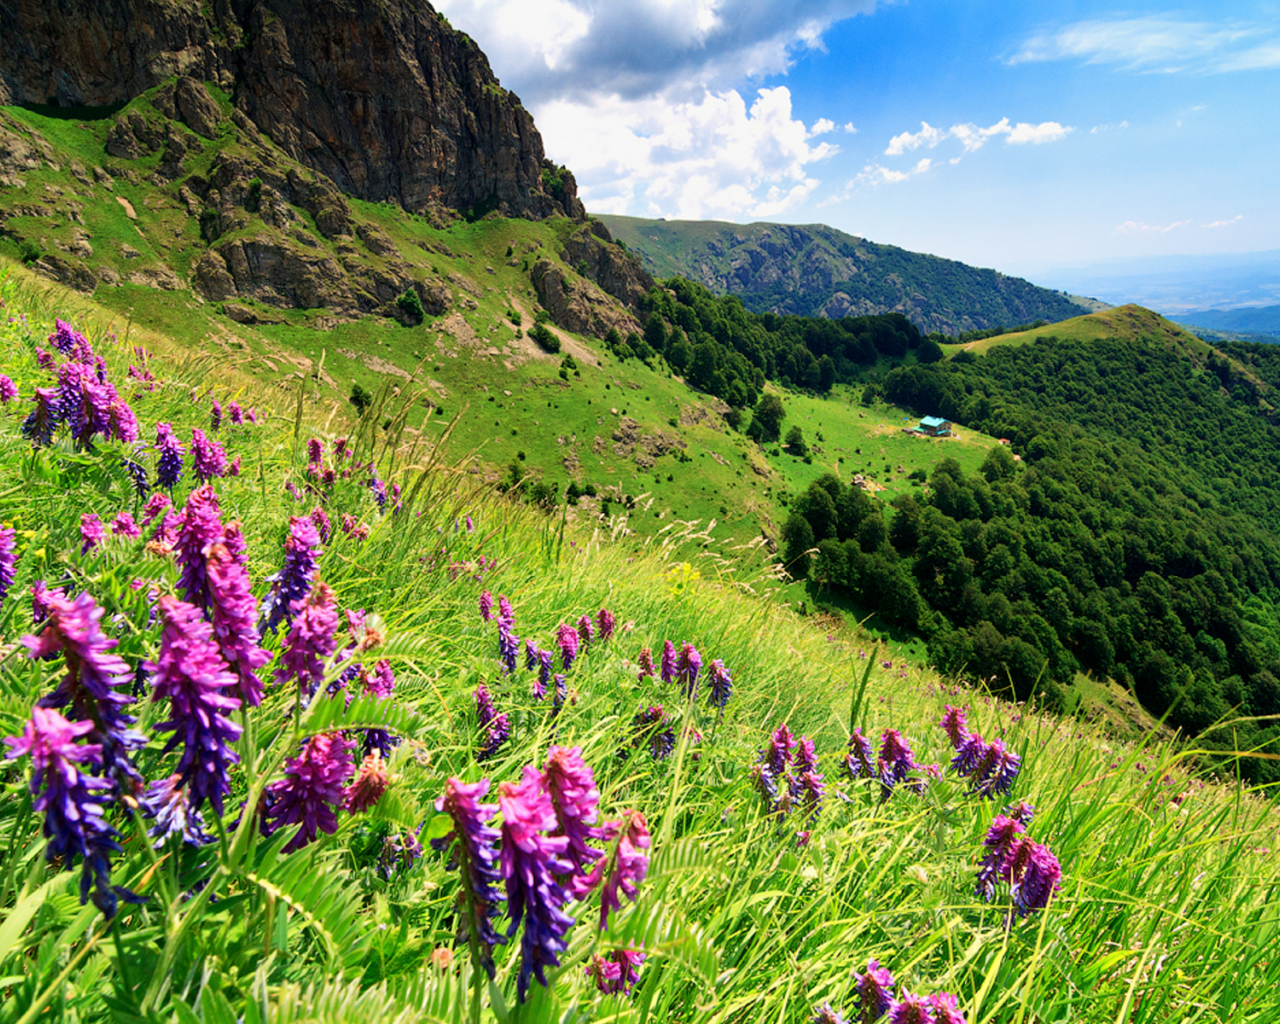 стара планина, балканские горы, болгария, горы, скалы, деревья, лес, небо, облака, трава, цветы, пейзаж, природа